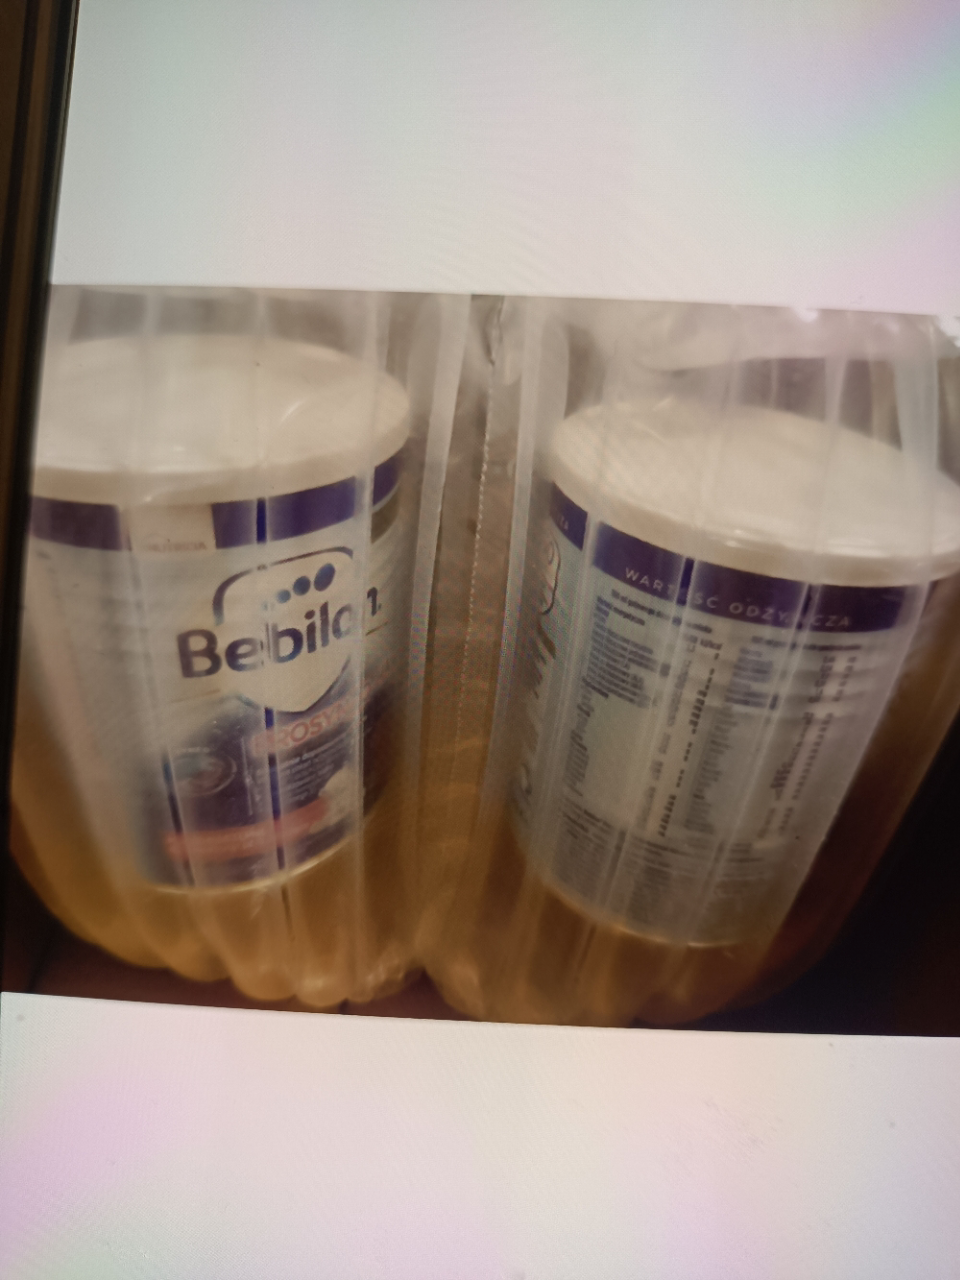 原装进口波兰Bebilon纽太特HA适度水解抗过敏配方奶粉6个月以上2段400g晒单图